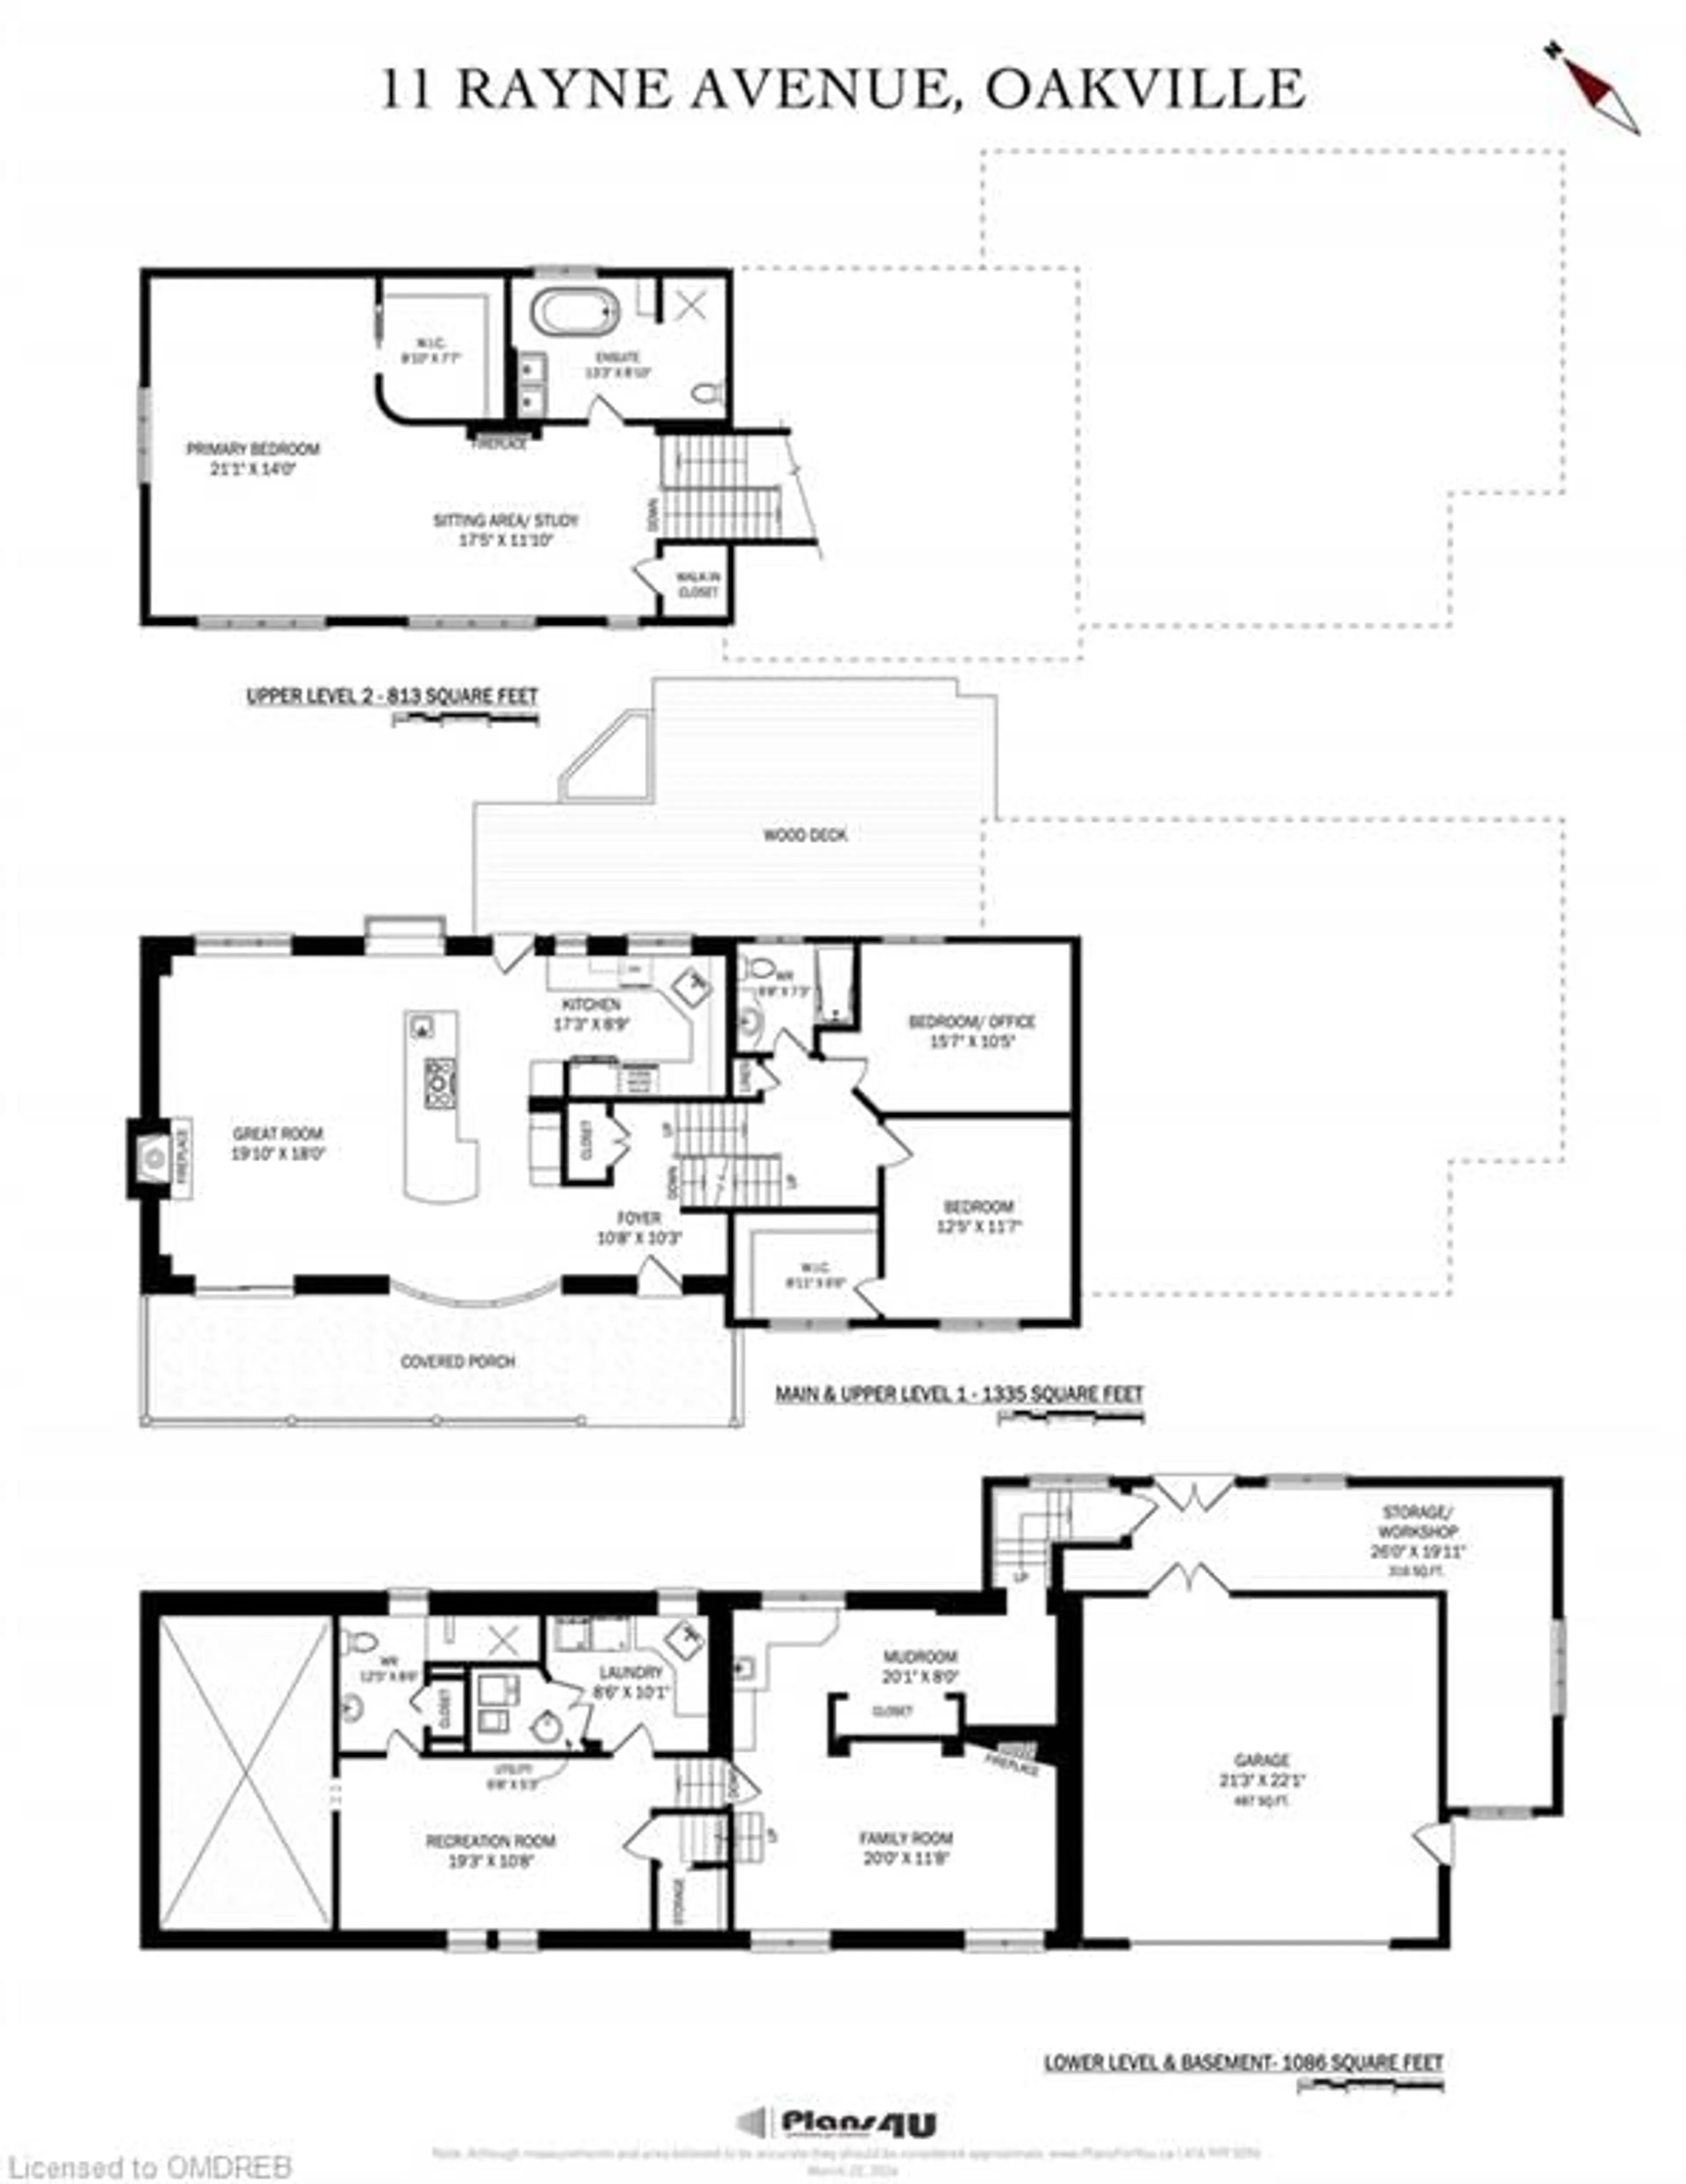 Floor plan for 11 Rayne Ave, Oakville Ontario L6H 1C1